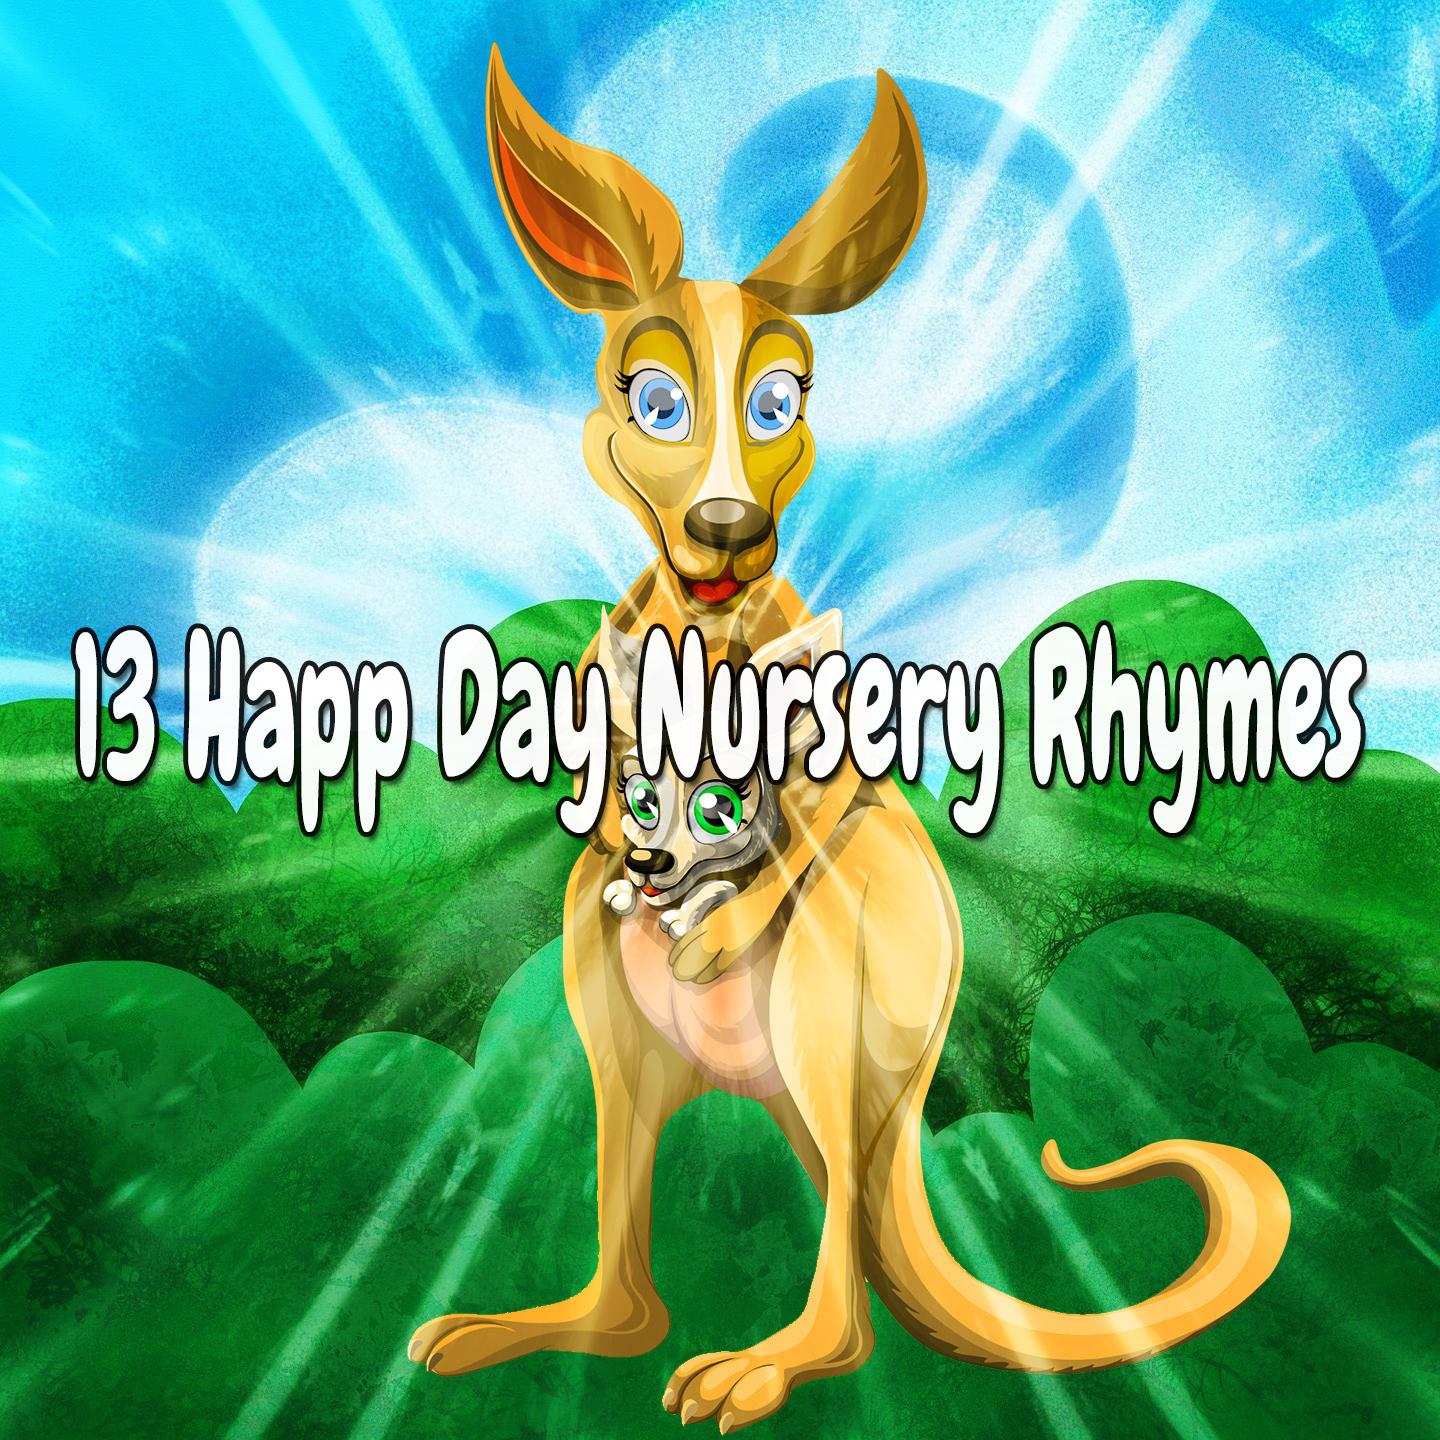 13 Happ Day Nursery Rhymes